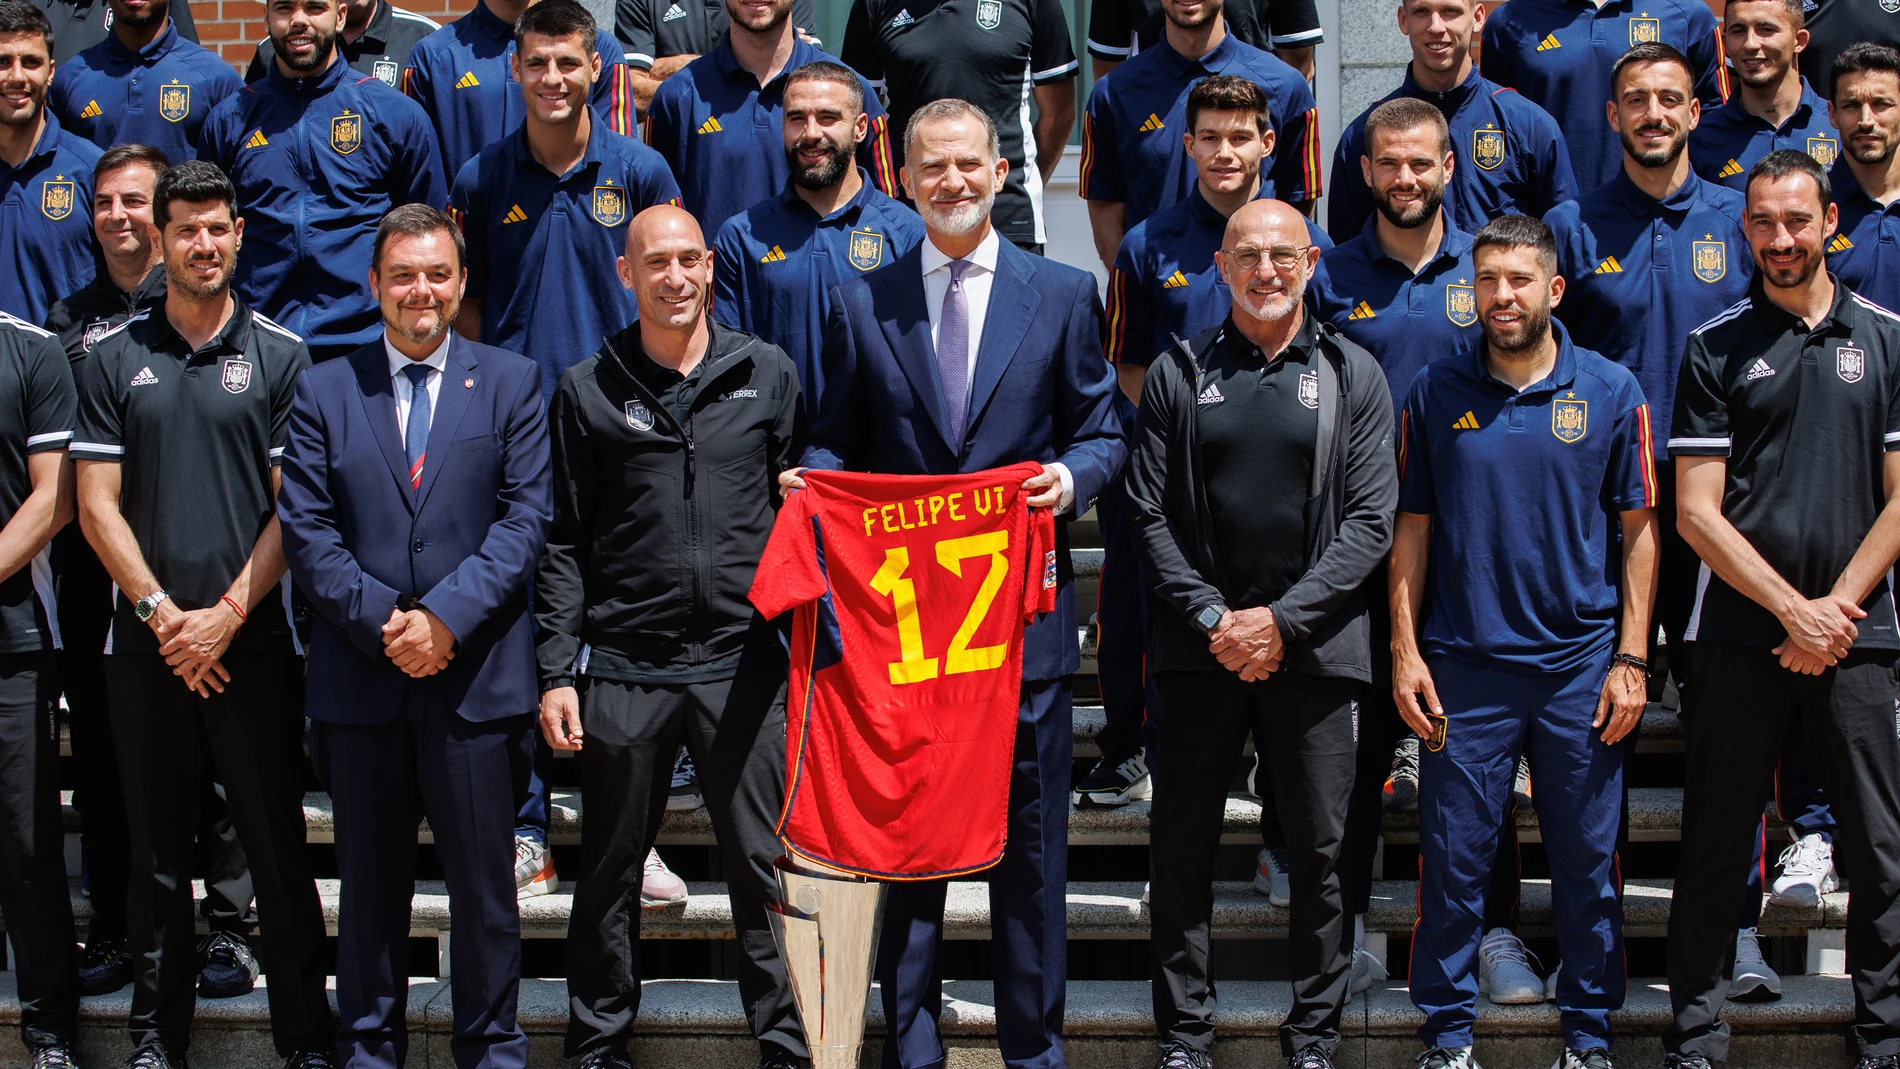 VÍDEO: Fútbol/Selección.- El Rey Felipe VI recibe a la selección española tras la conquista de la Liga de Naciones